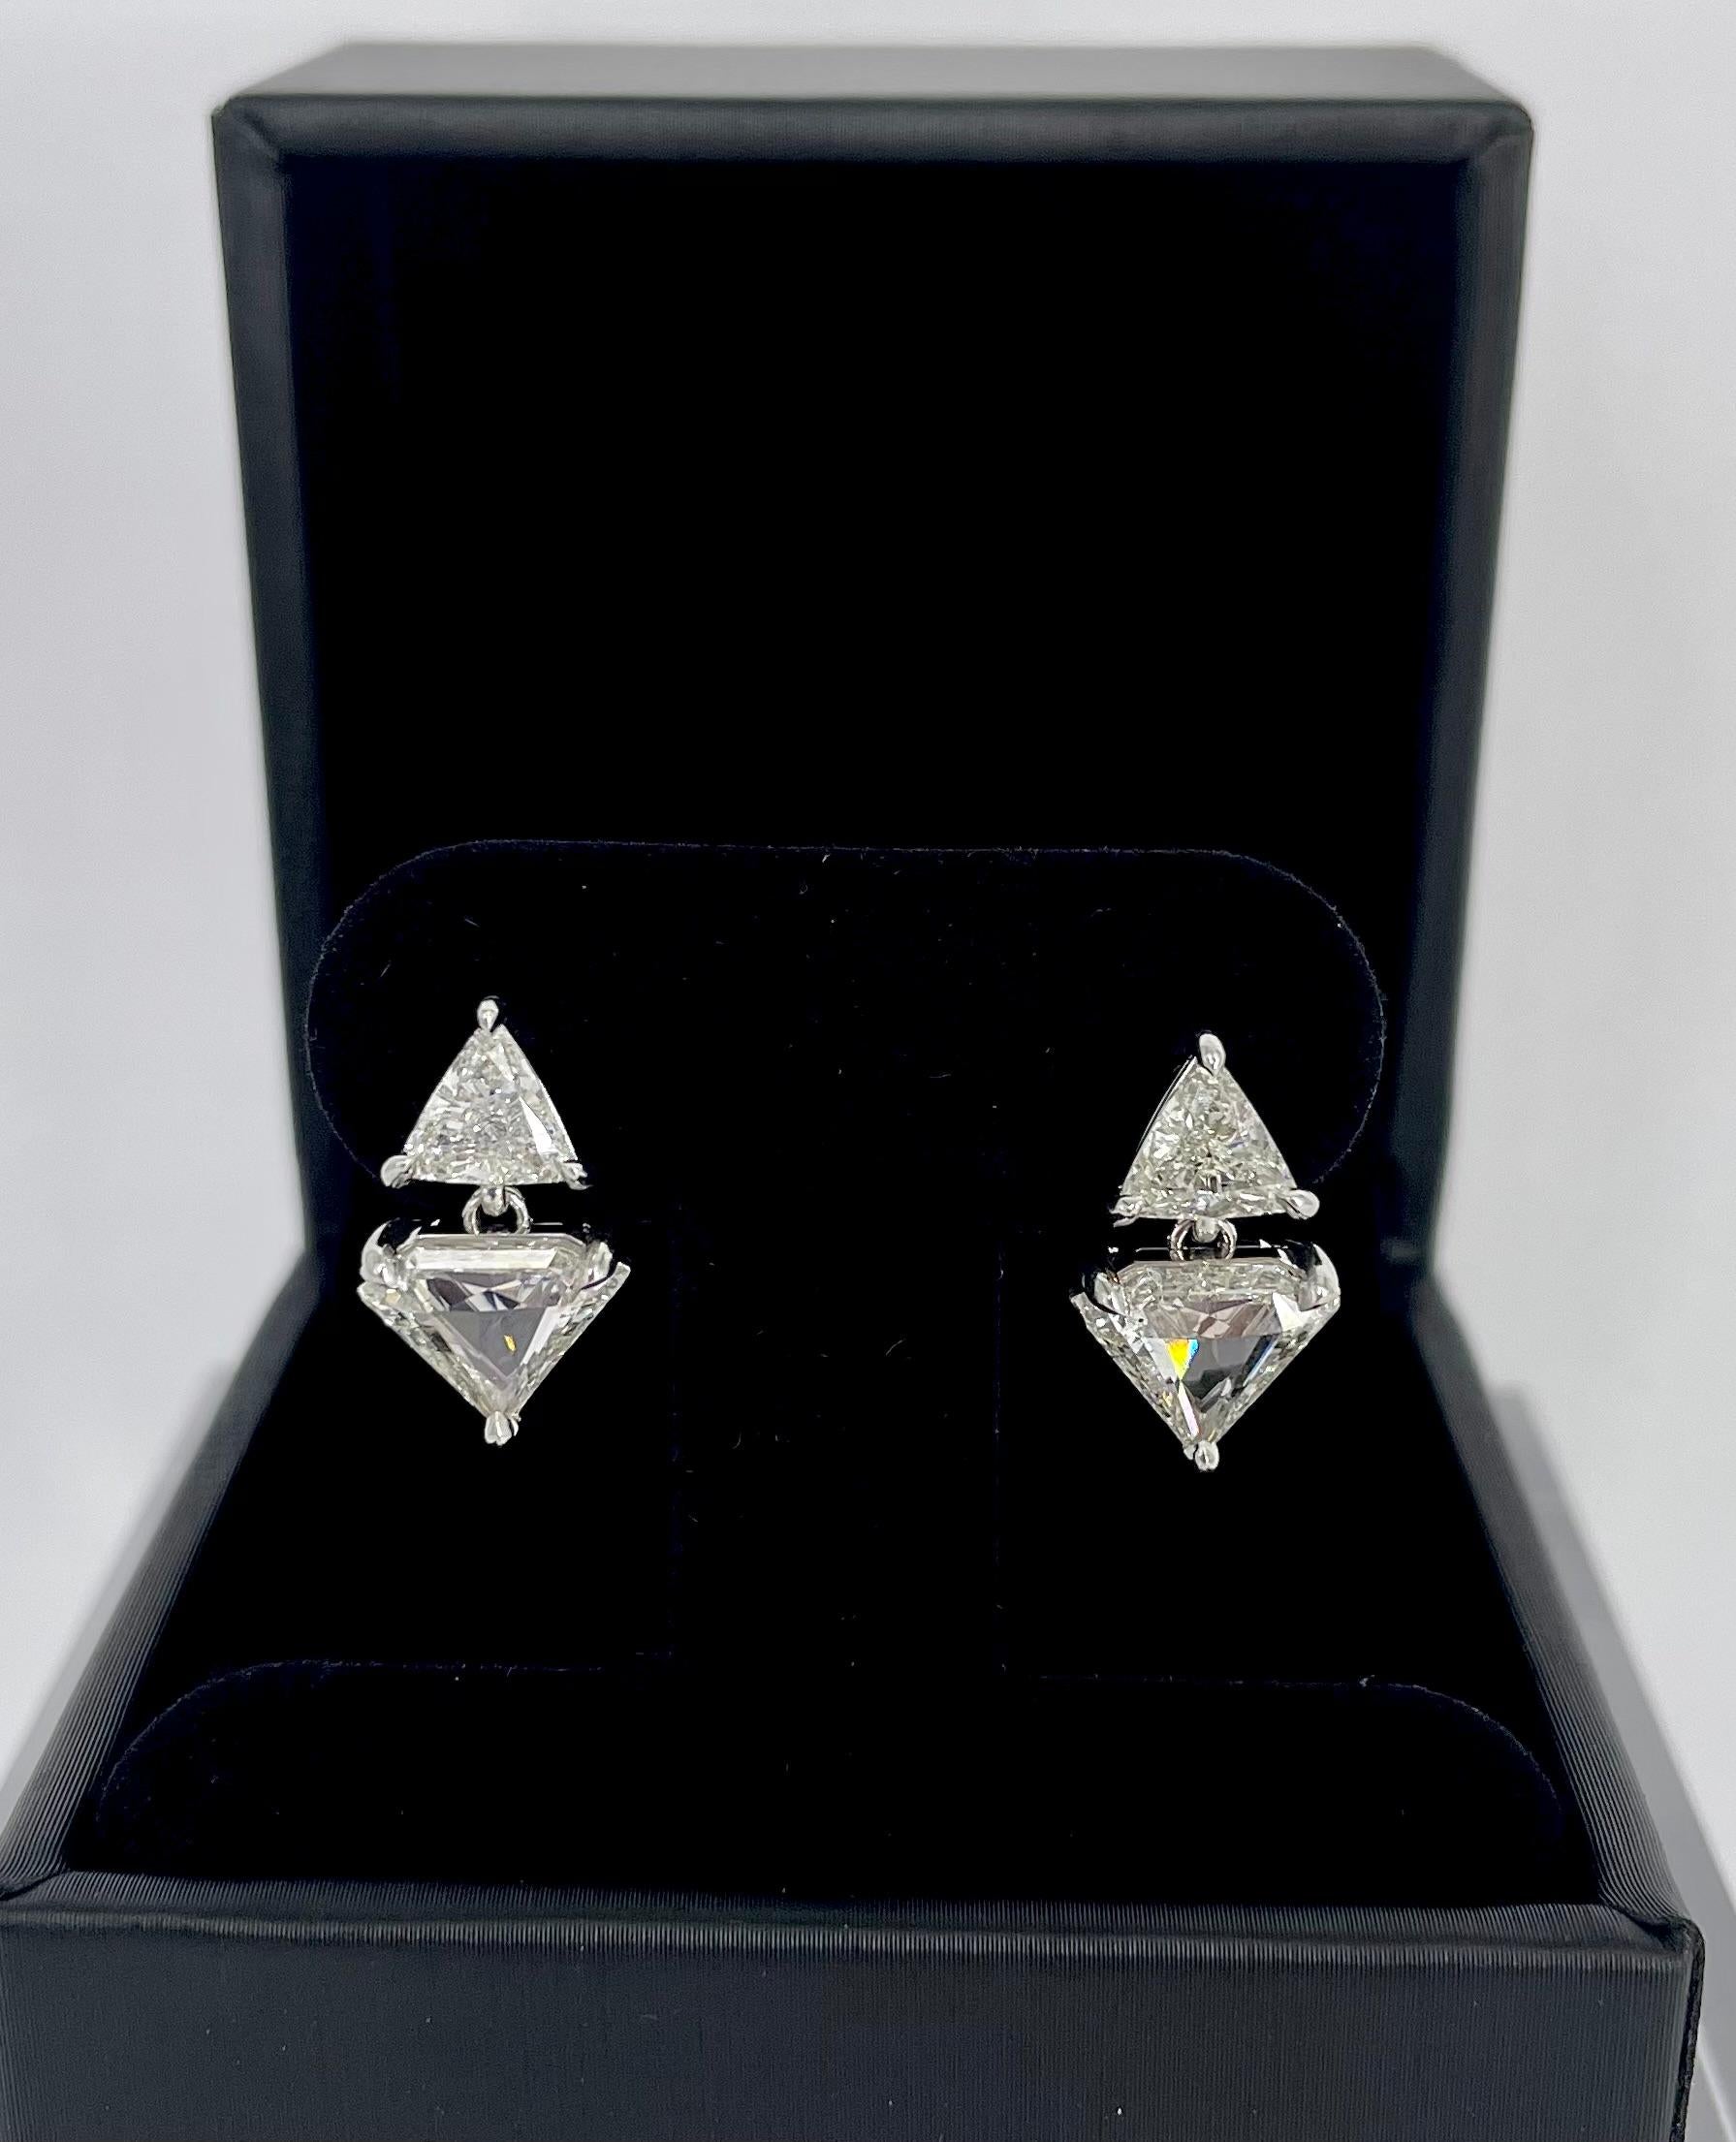 Ob ausgefallen oder elegant, es gibt so viele Möglichkeiten, dieses einzigartige Paar Diamant-Ohrringe zu stylen. Die Ohrringe sind mit einem Billionenschliff im Ohrstecker versehen, und ein diamantförmiger Tropfen fällt direkt unter das Ohr. Die